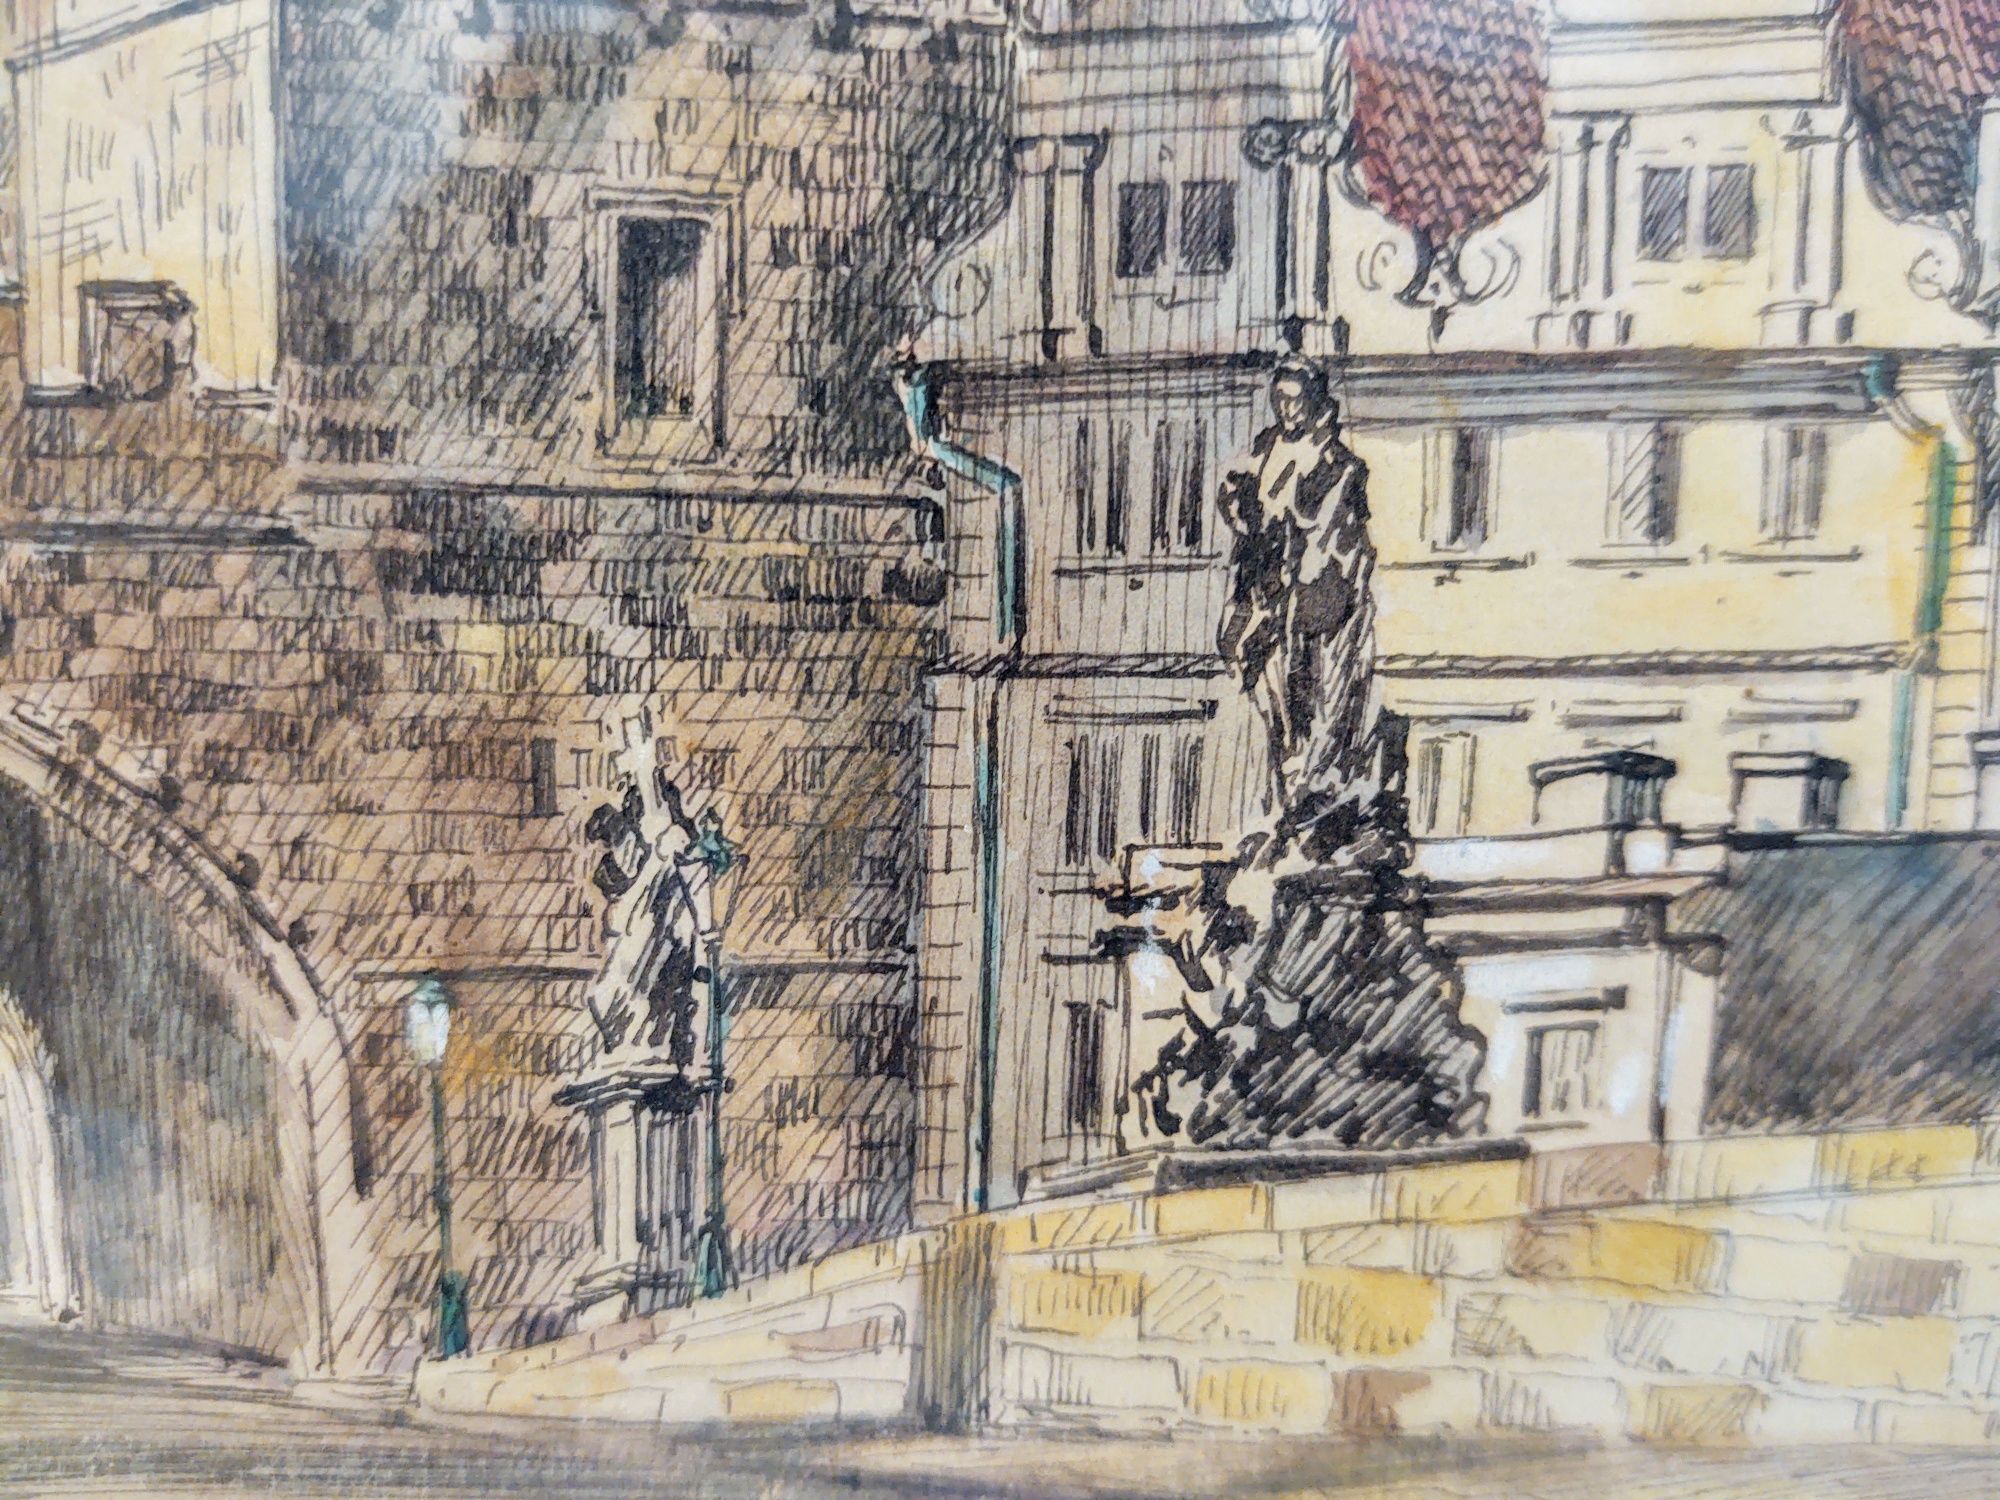 Obraz stary akwarela Praga antyk retro sztuka malarstwo